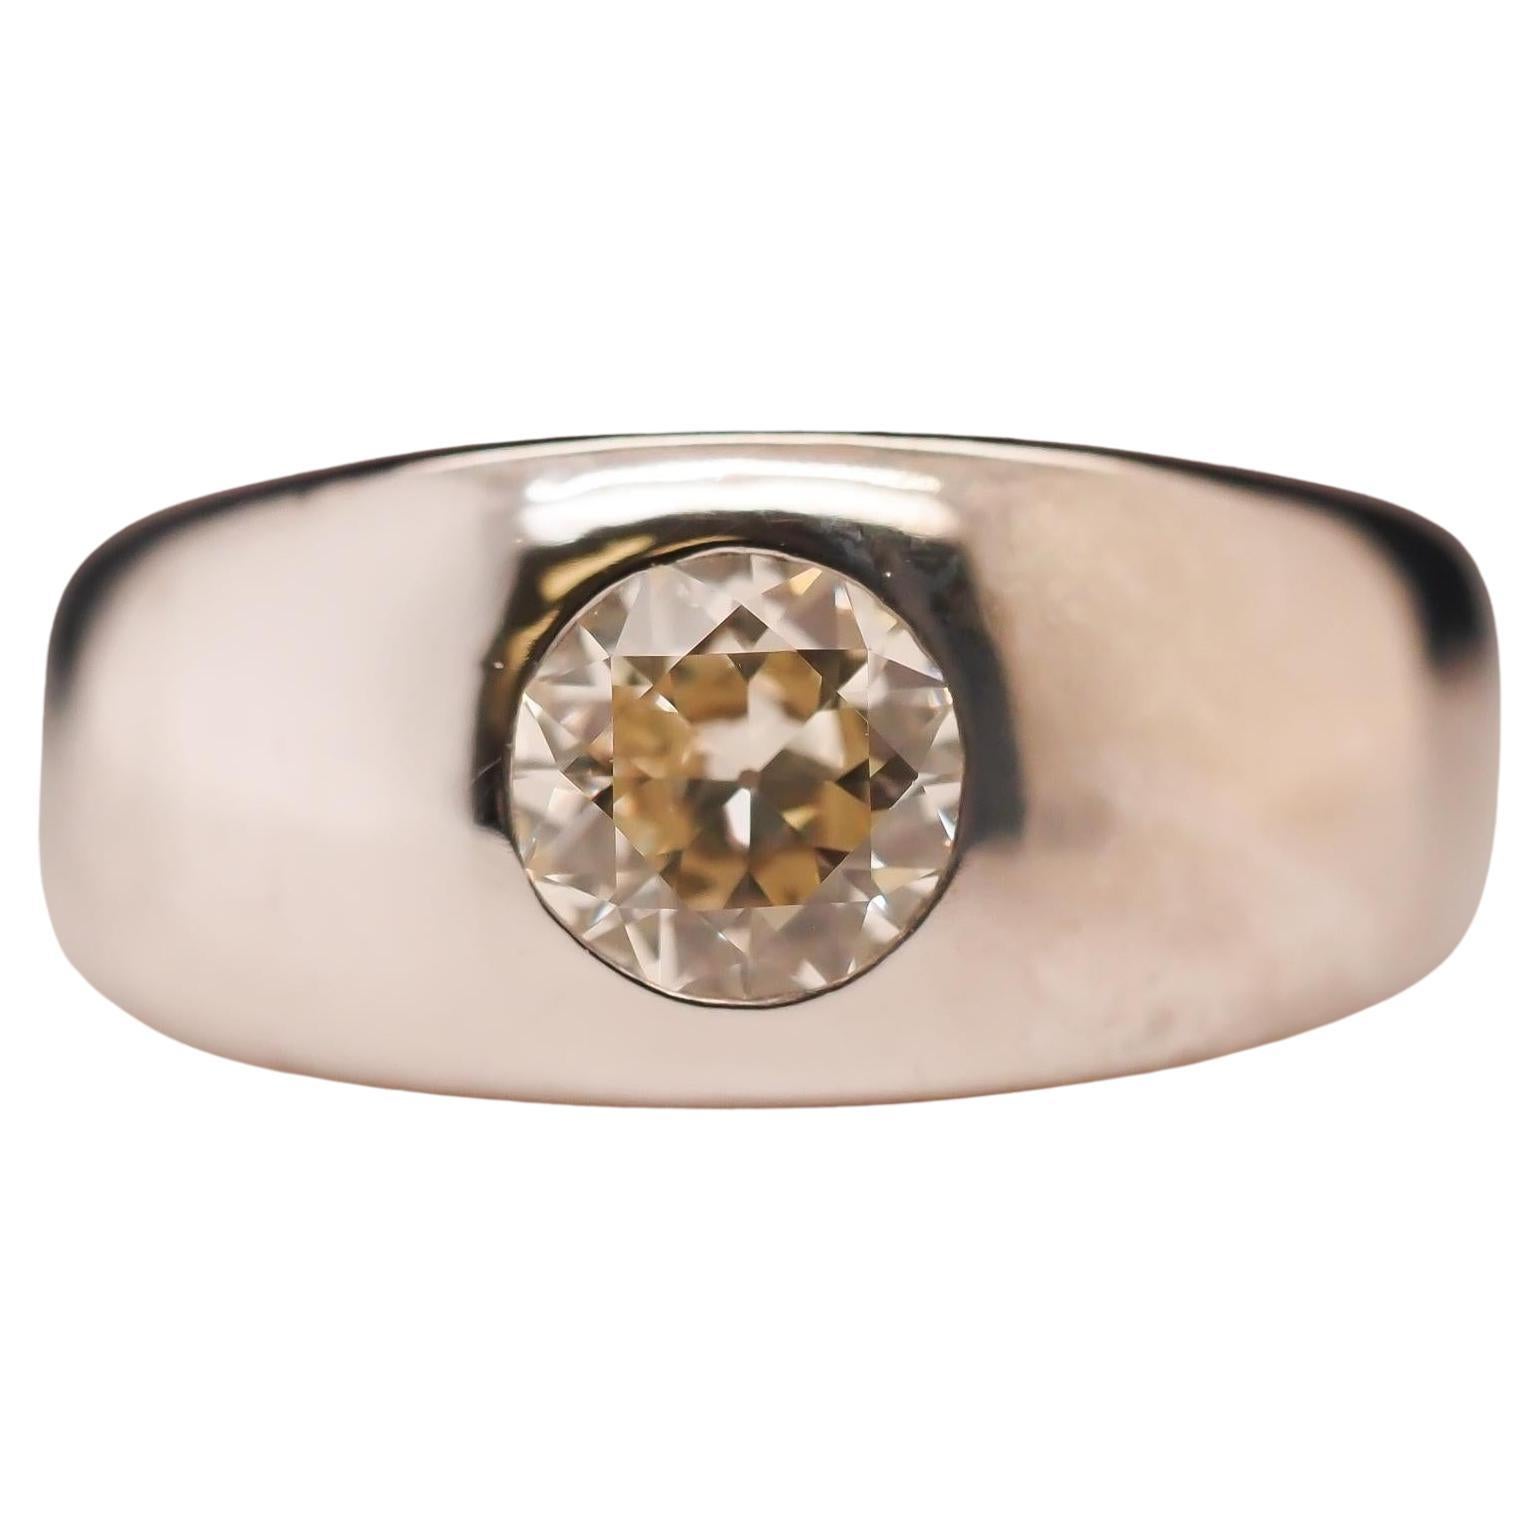 Circa 1940s 14K White Gold 1.35ct Old European Brilliant Diamond Ring